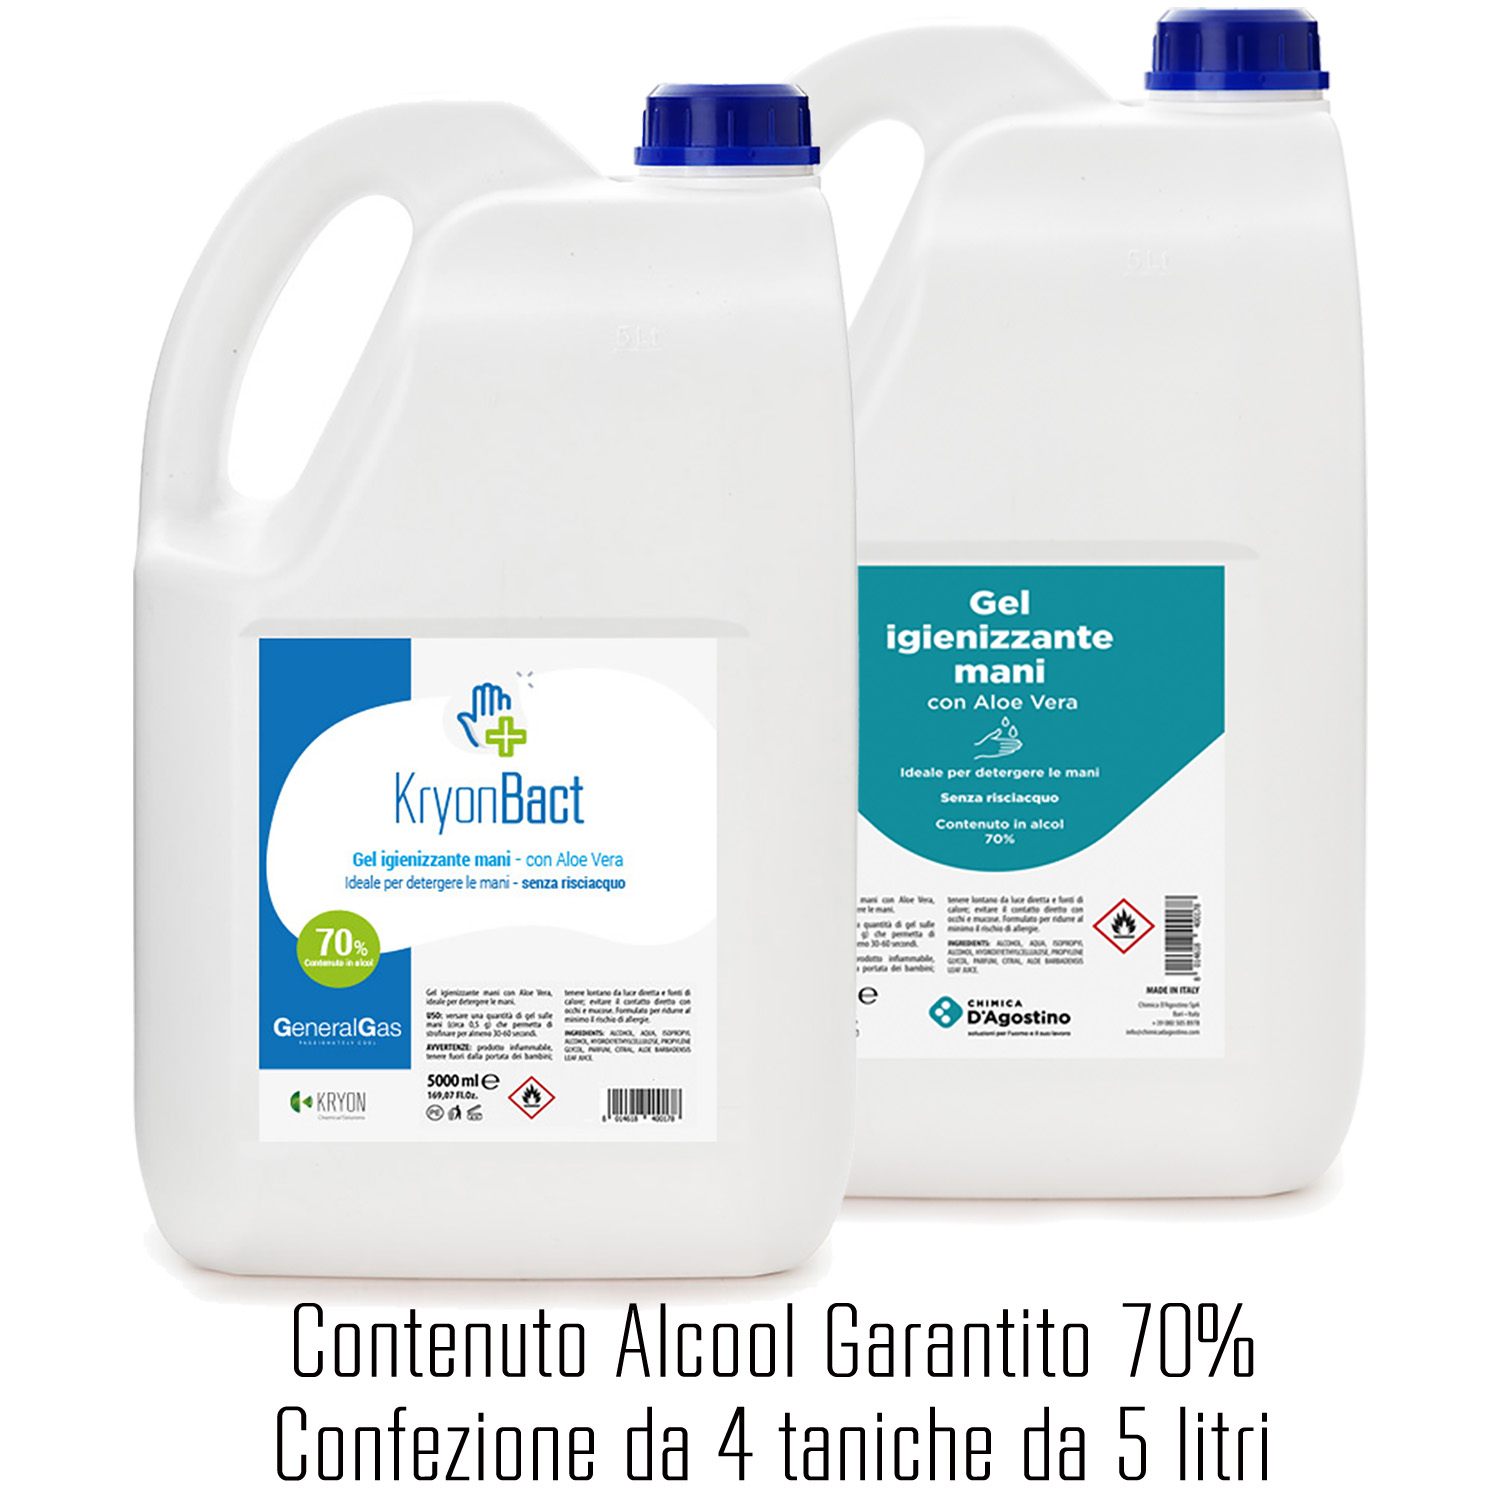 4 x KryonBact 70 - gel igienizzante alcool 70% - tanica 5 litri - confezione 4 taniche